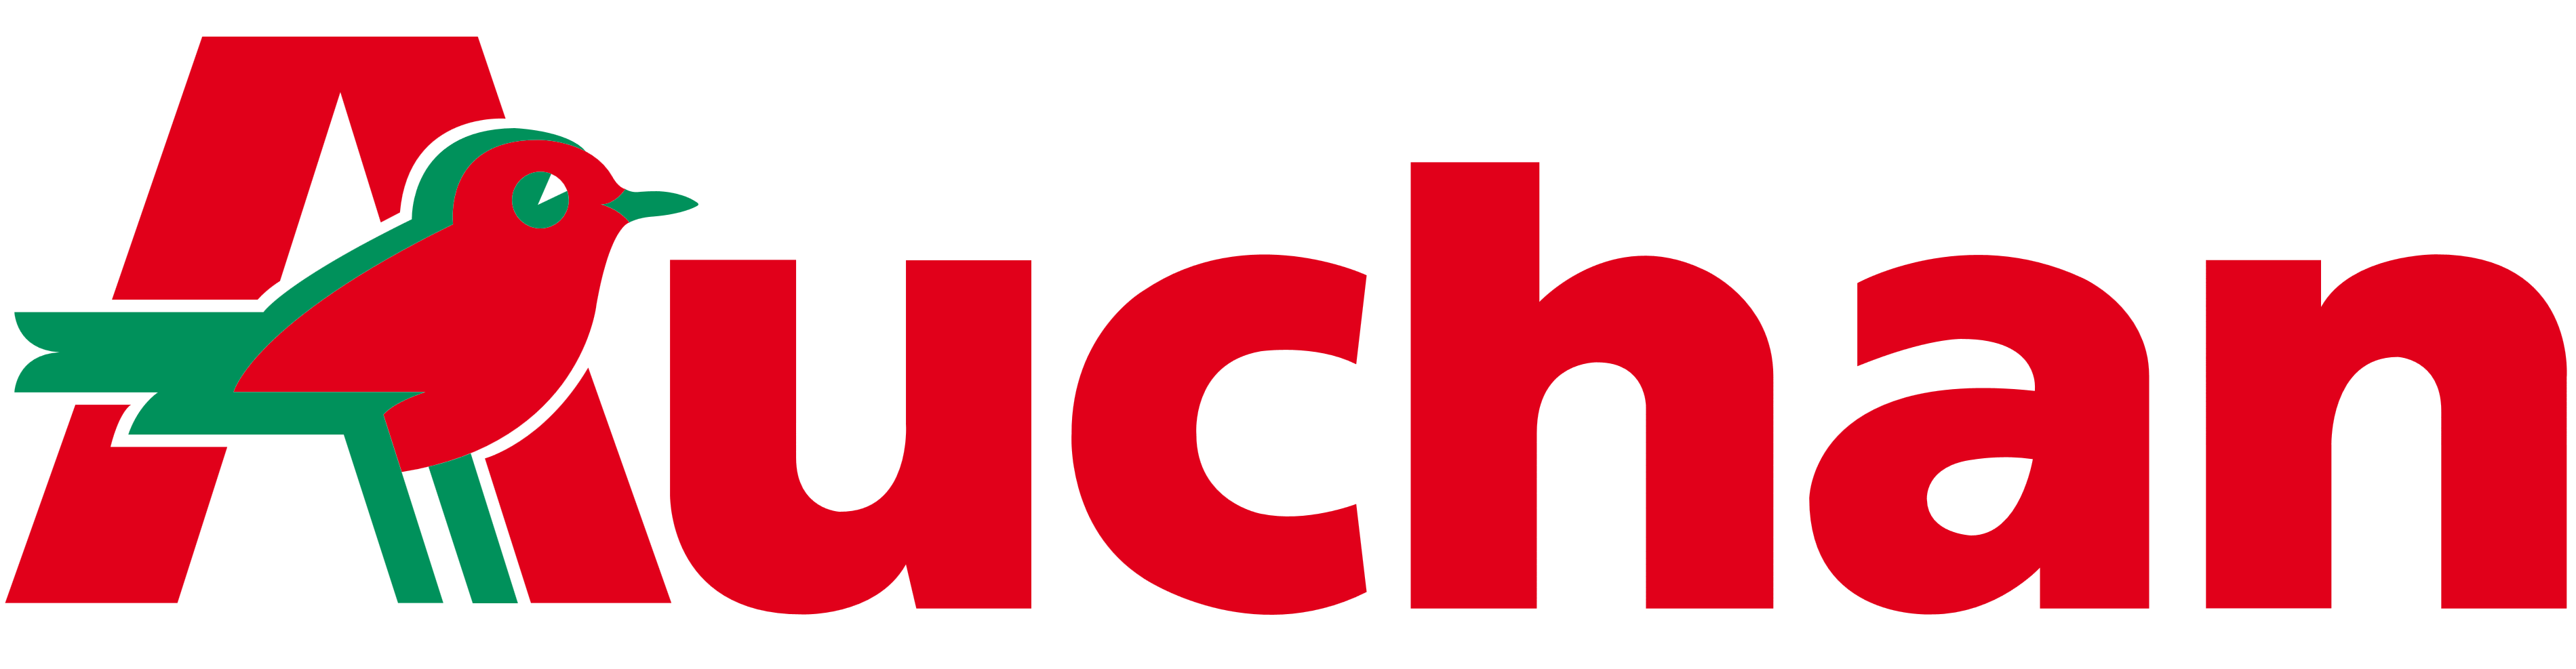 Auchan Logo PNG - 103705